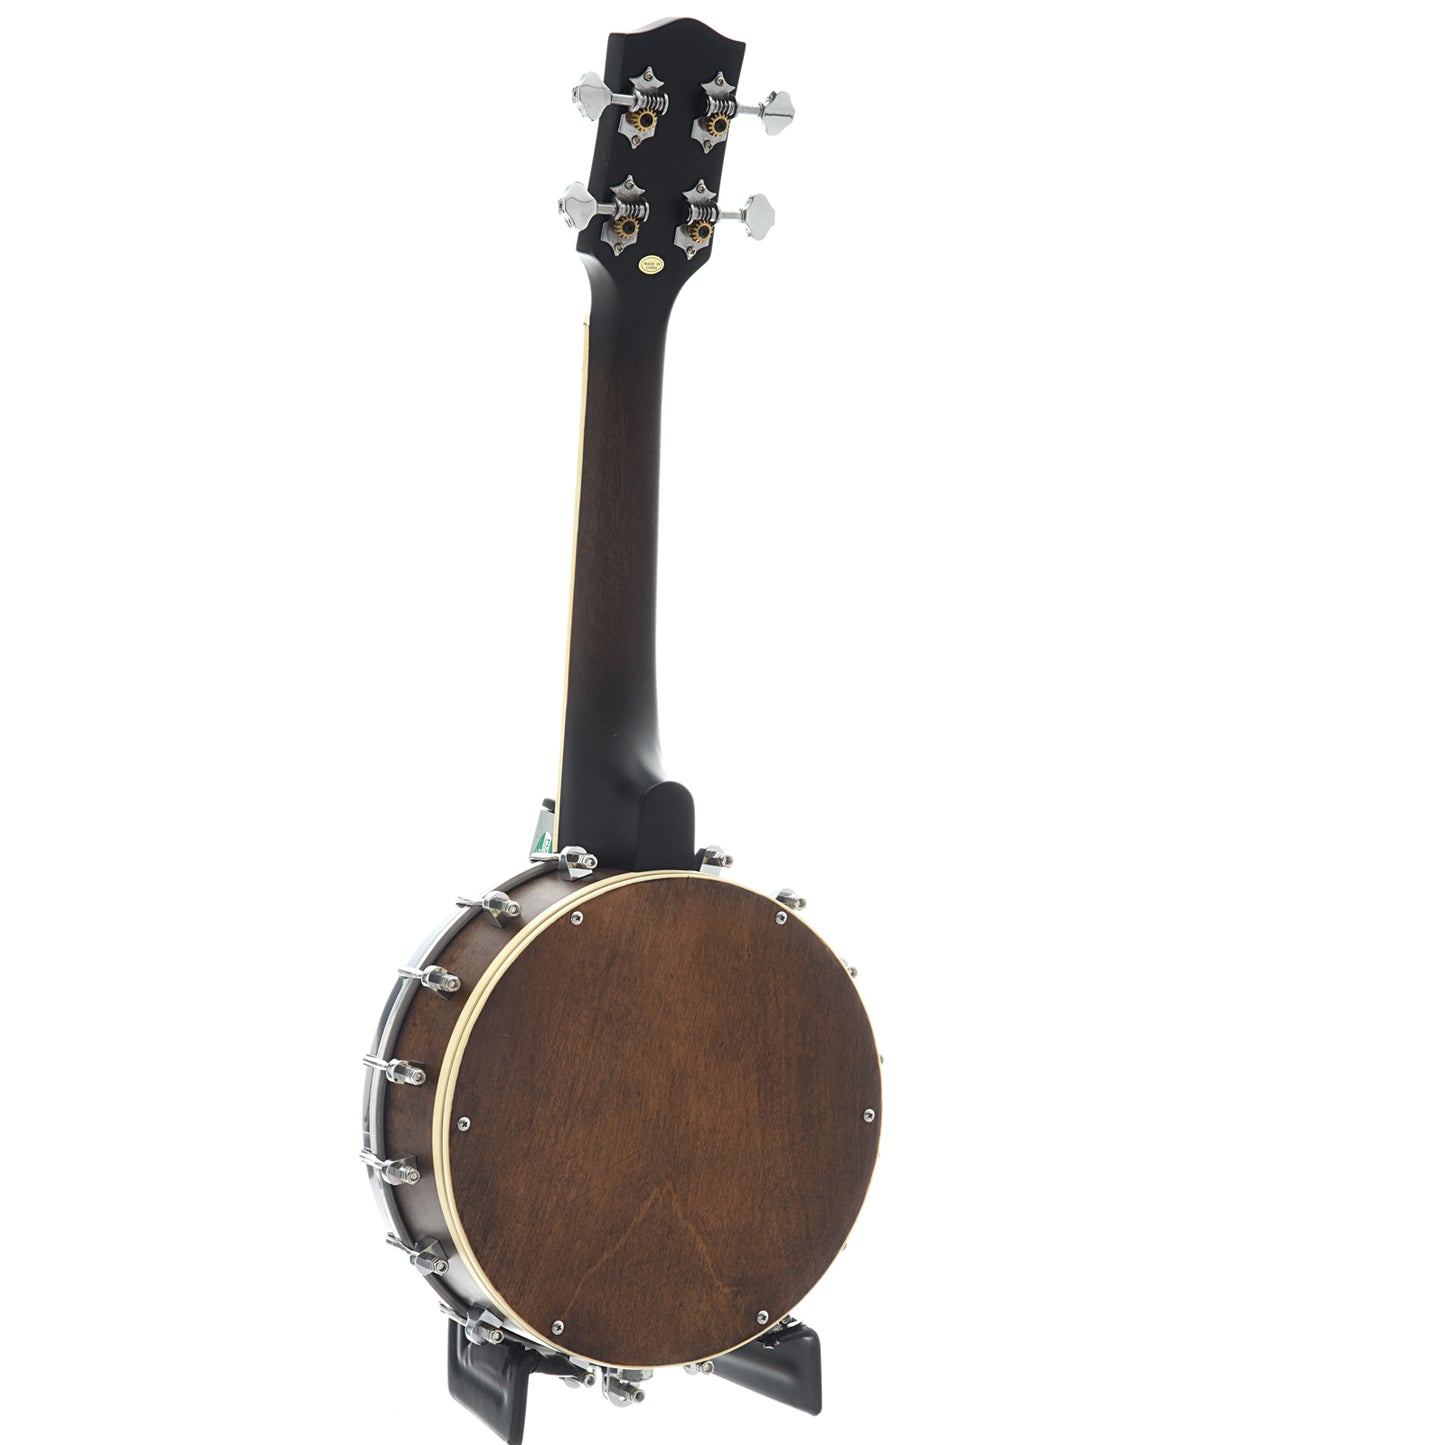 Image 10 of Gold Tone Soprano Banjo Ukulele & Case - SKU# GTBUS : Product Type Banjo Ukuleles : Elderly Instruments